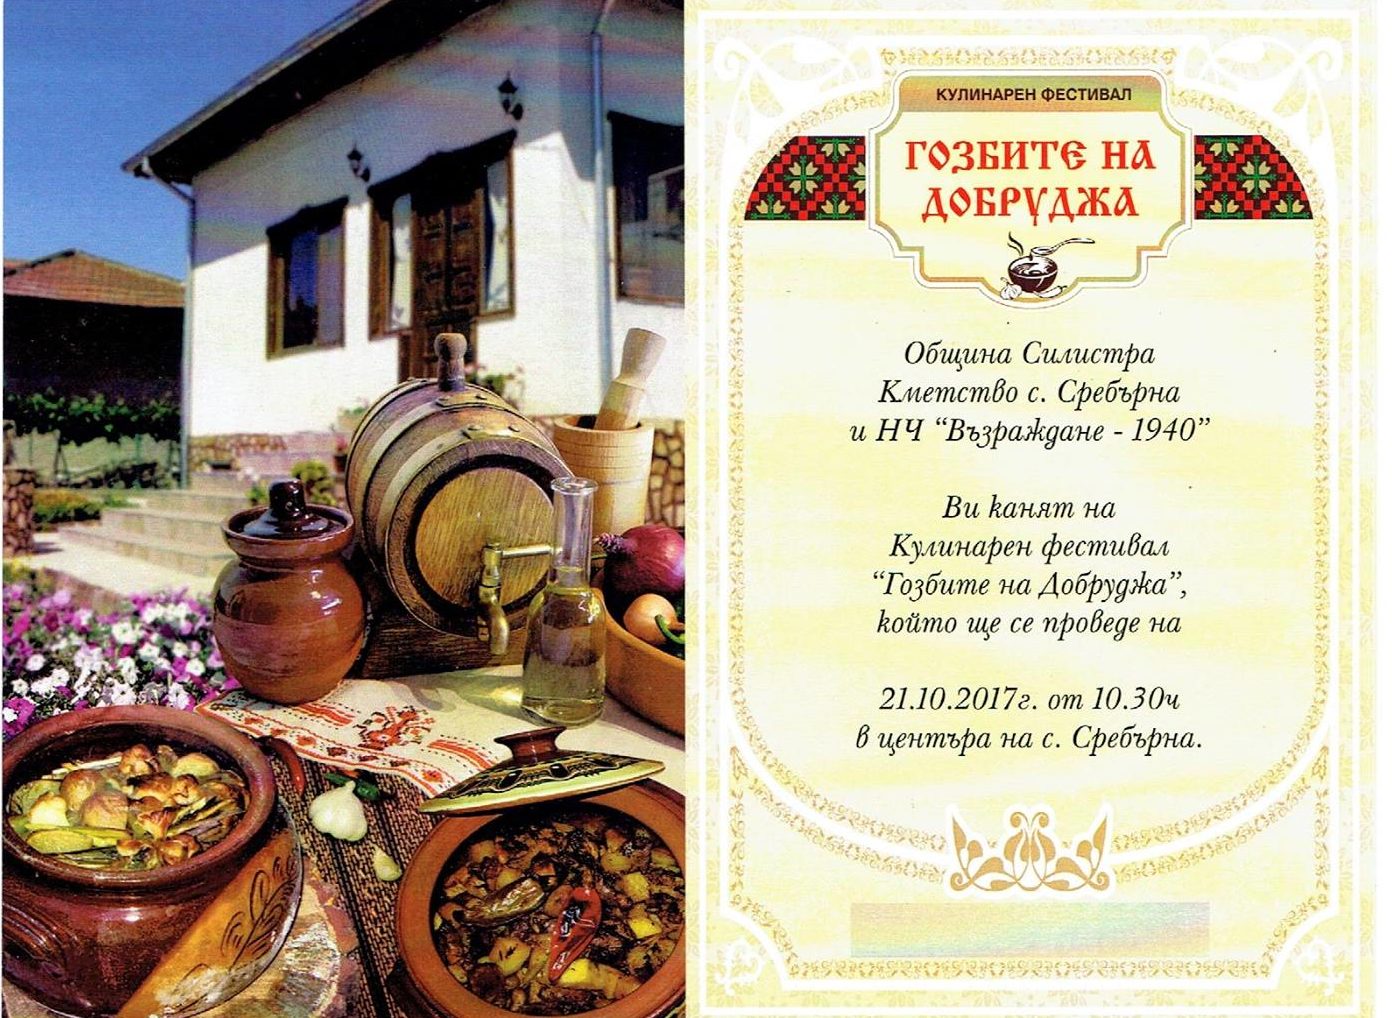 Кулинарен фестивал “ГОЗБИТЕ НА ДОБРУДЖА” , ще се проведе в Сребърна